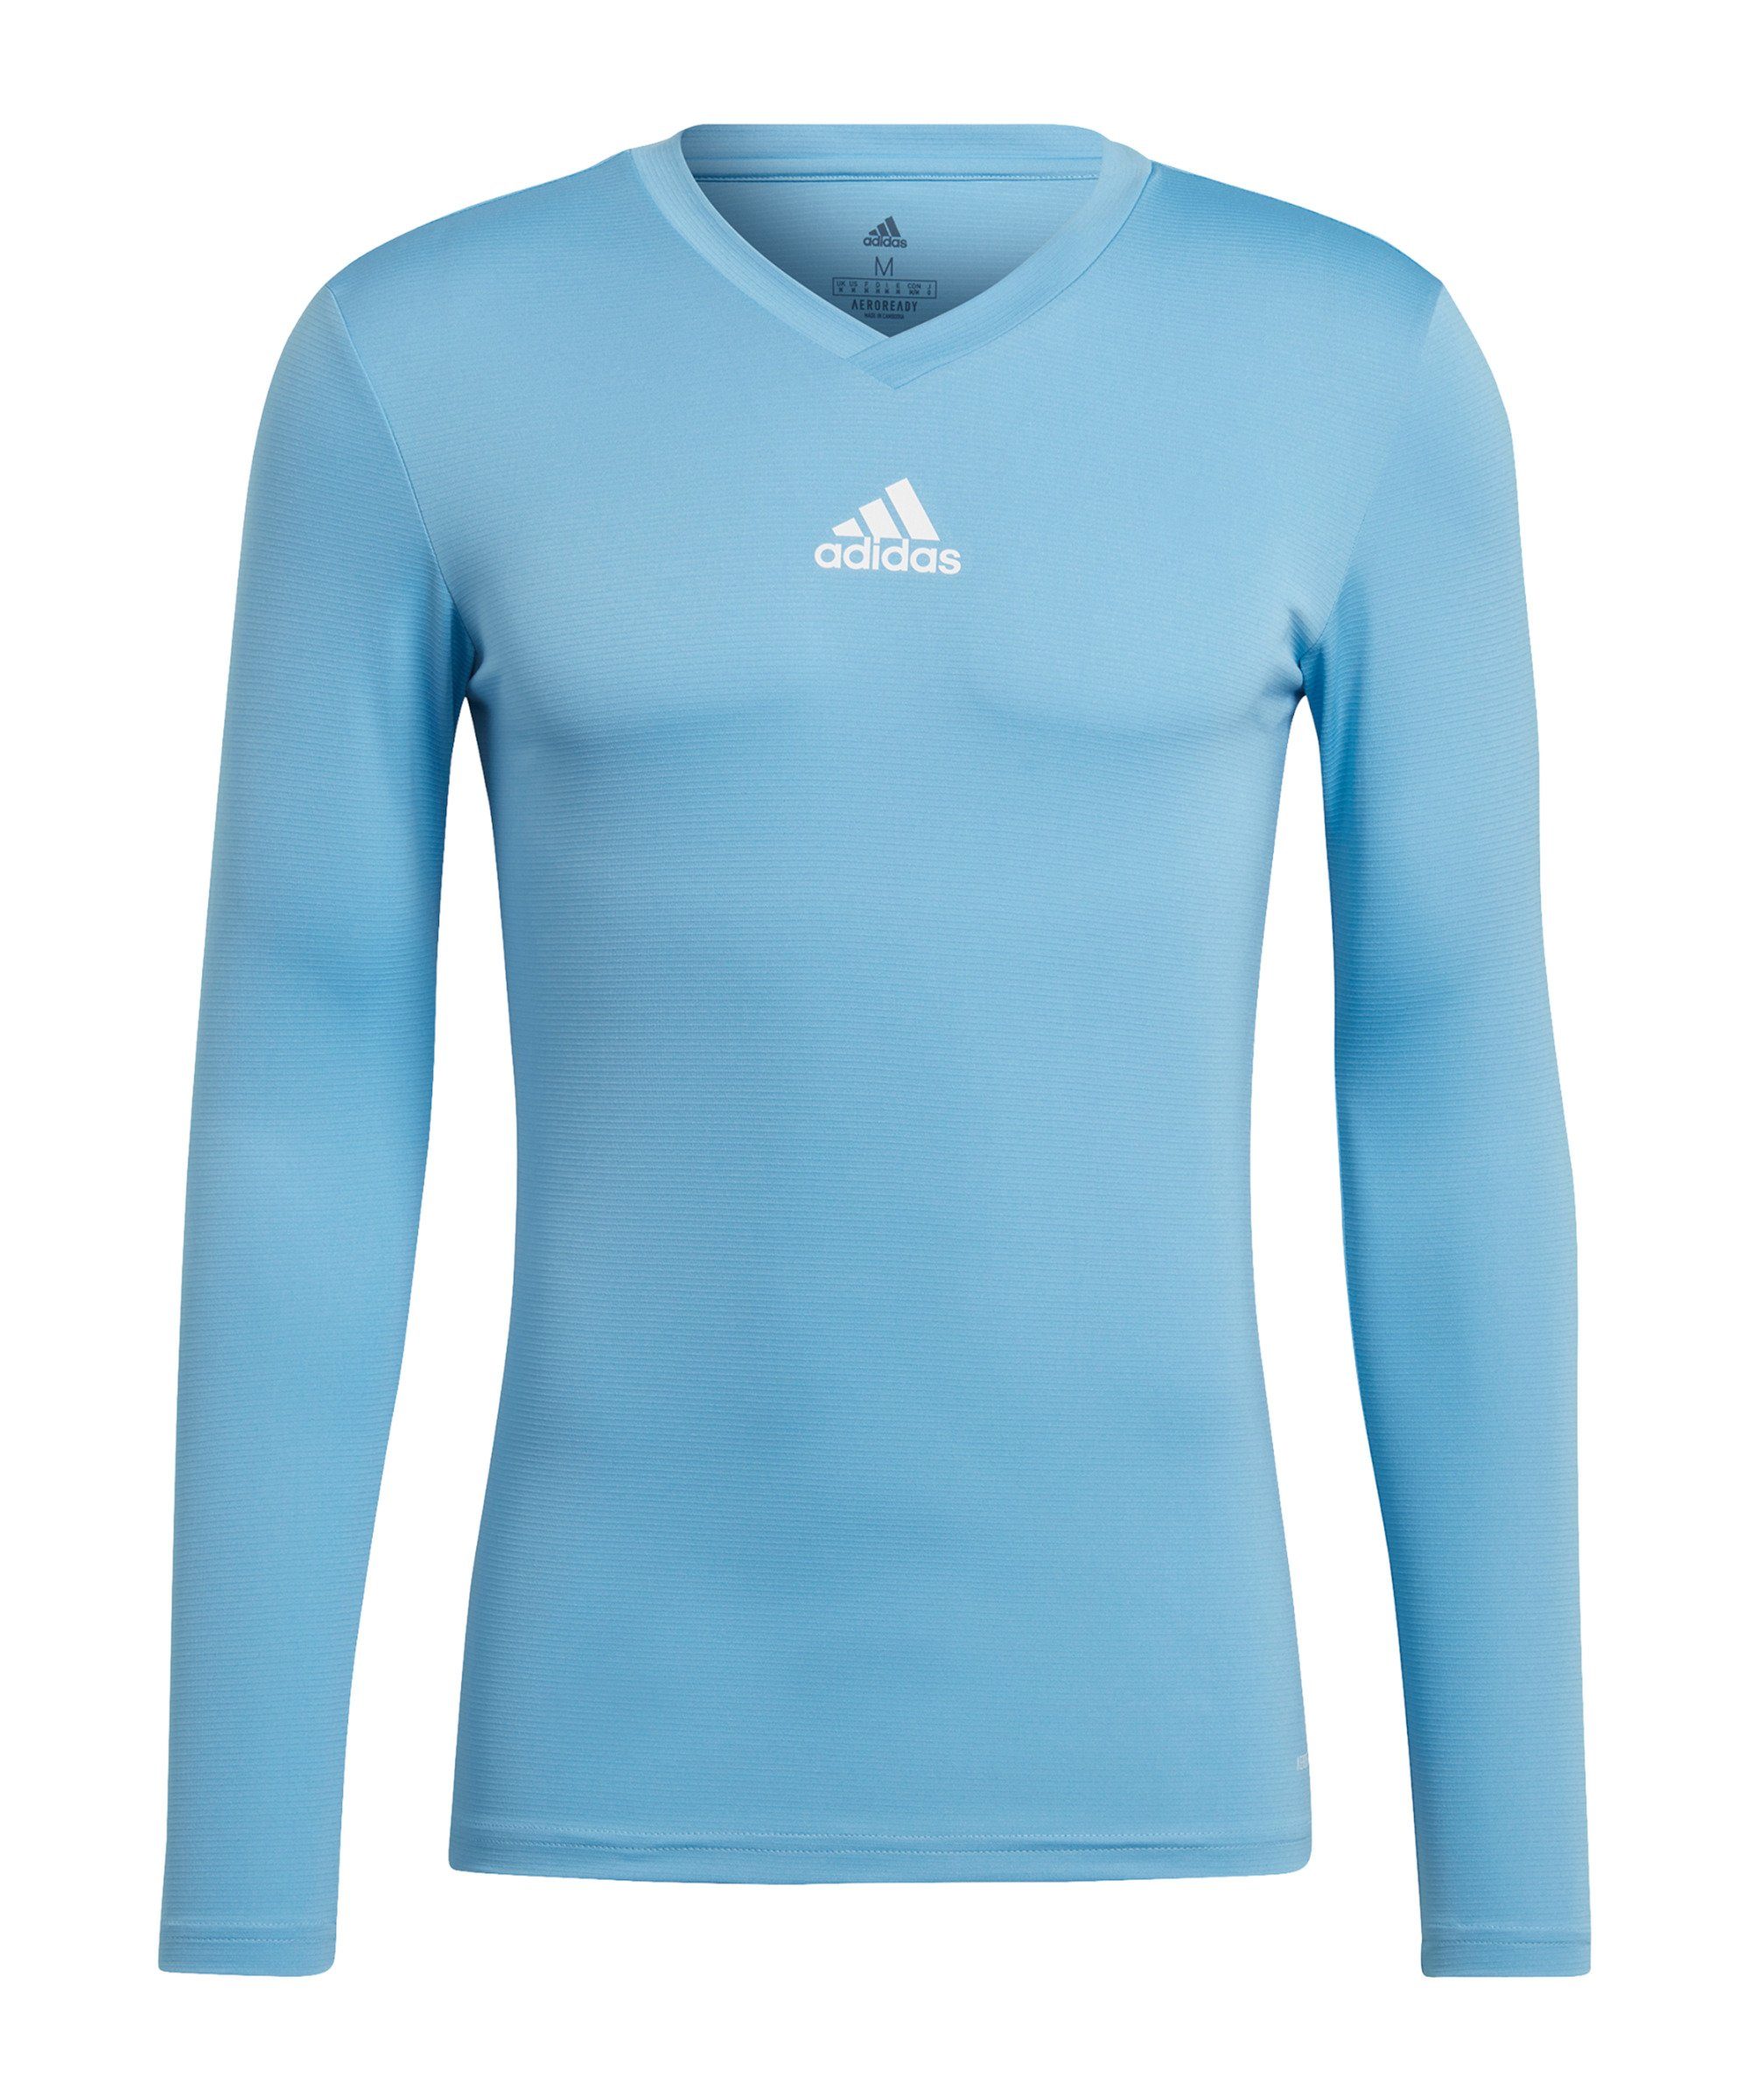 adidas Performance Funktionsshirt Team Base Top langarm Nachhaltiges Produkt blauweissblau